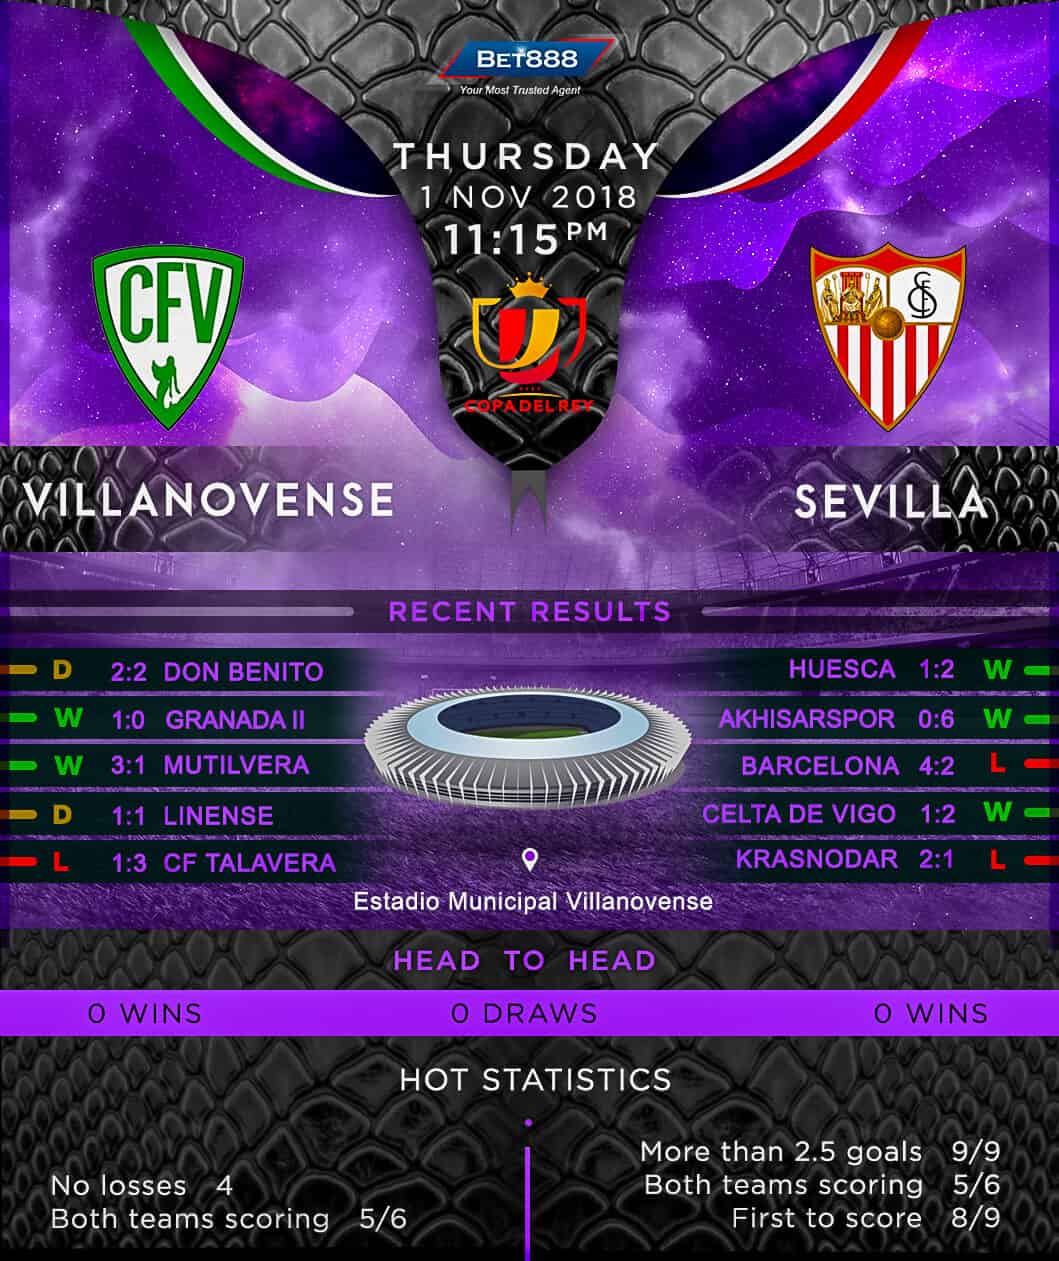 Villanovense vs Sevilla 01/11/18